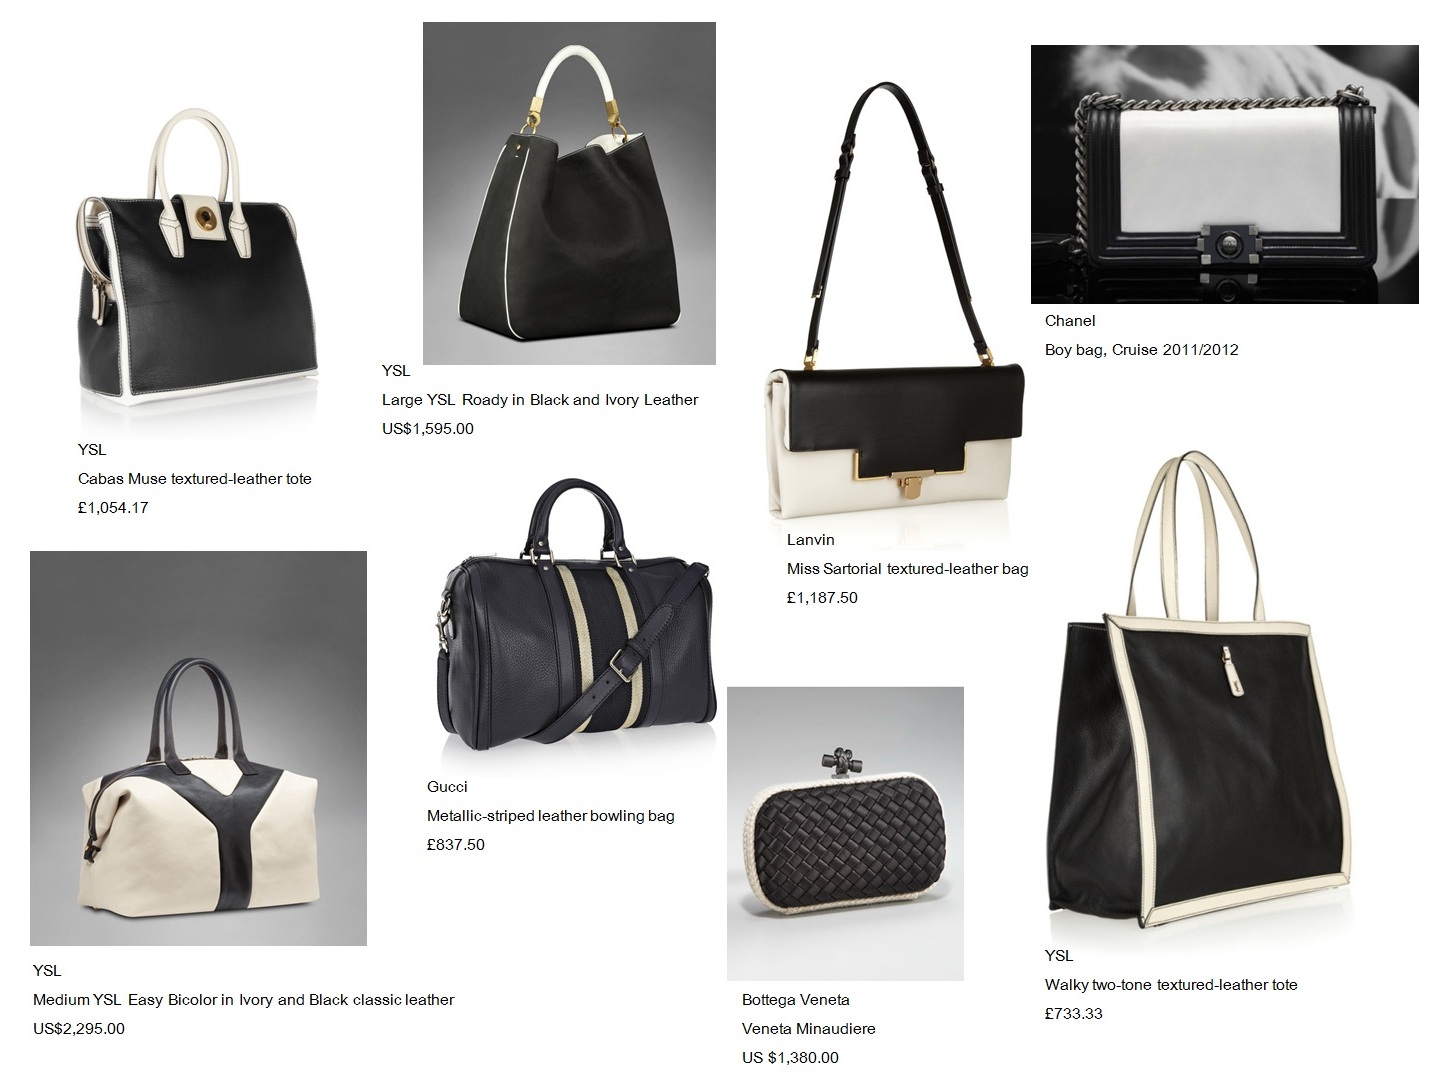 bagfetishperson: Geometric black and white handbags